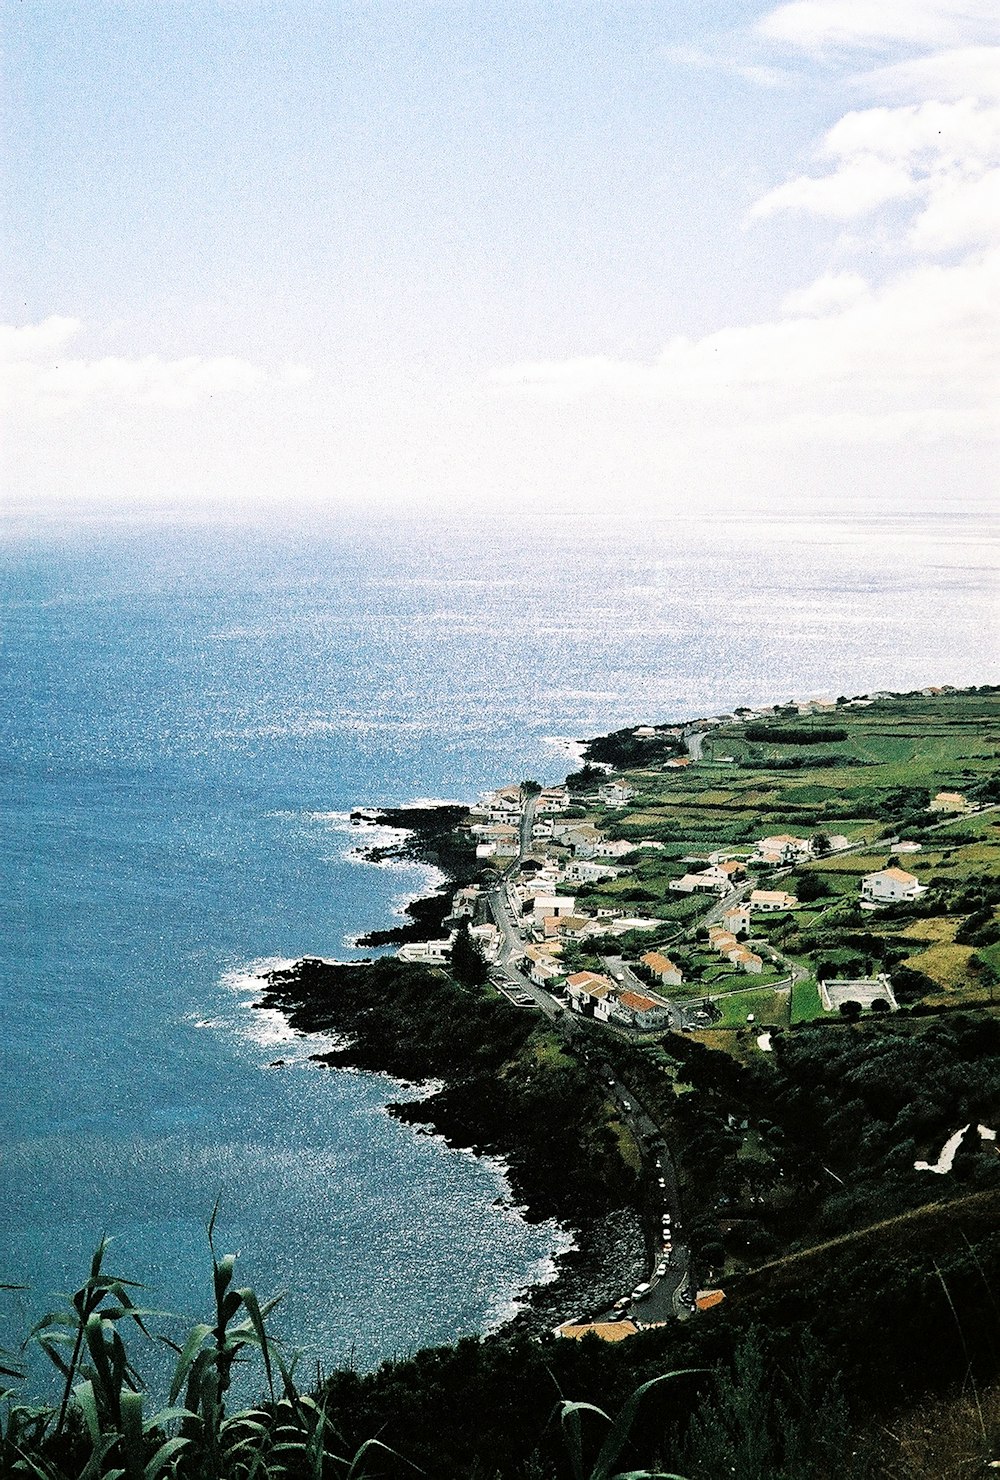 Une vue panoramique sur l’océan depuis une colline